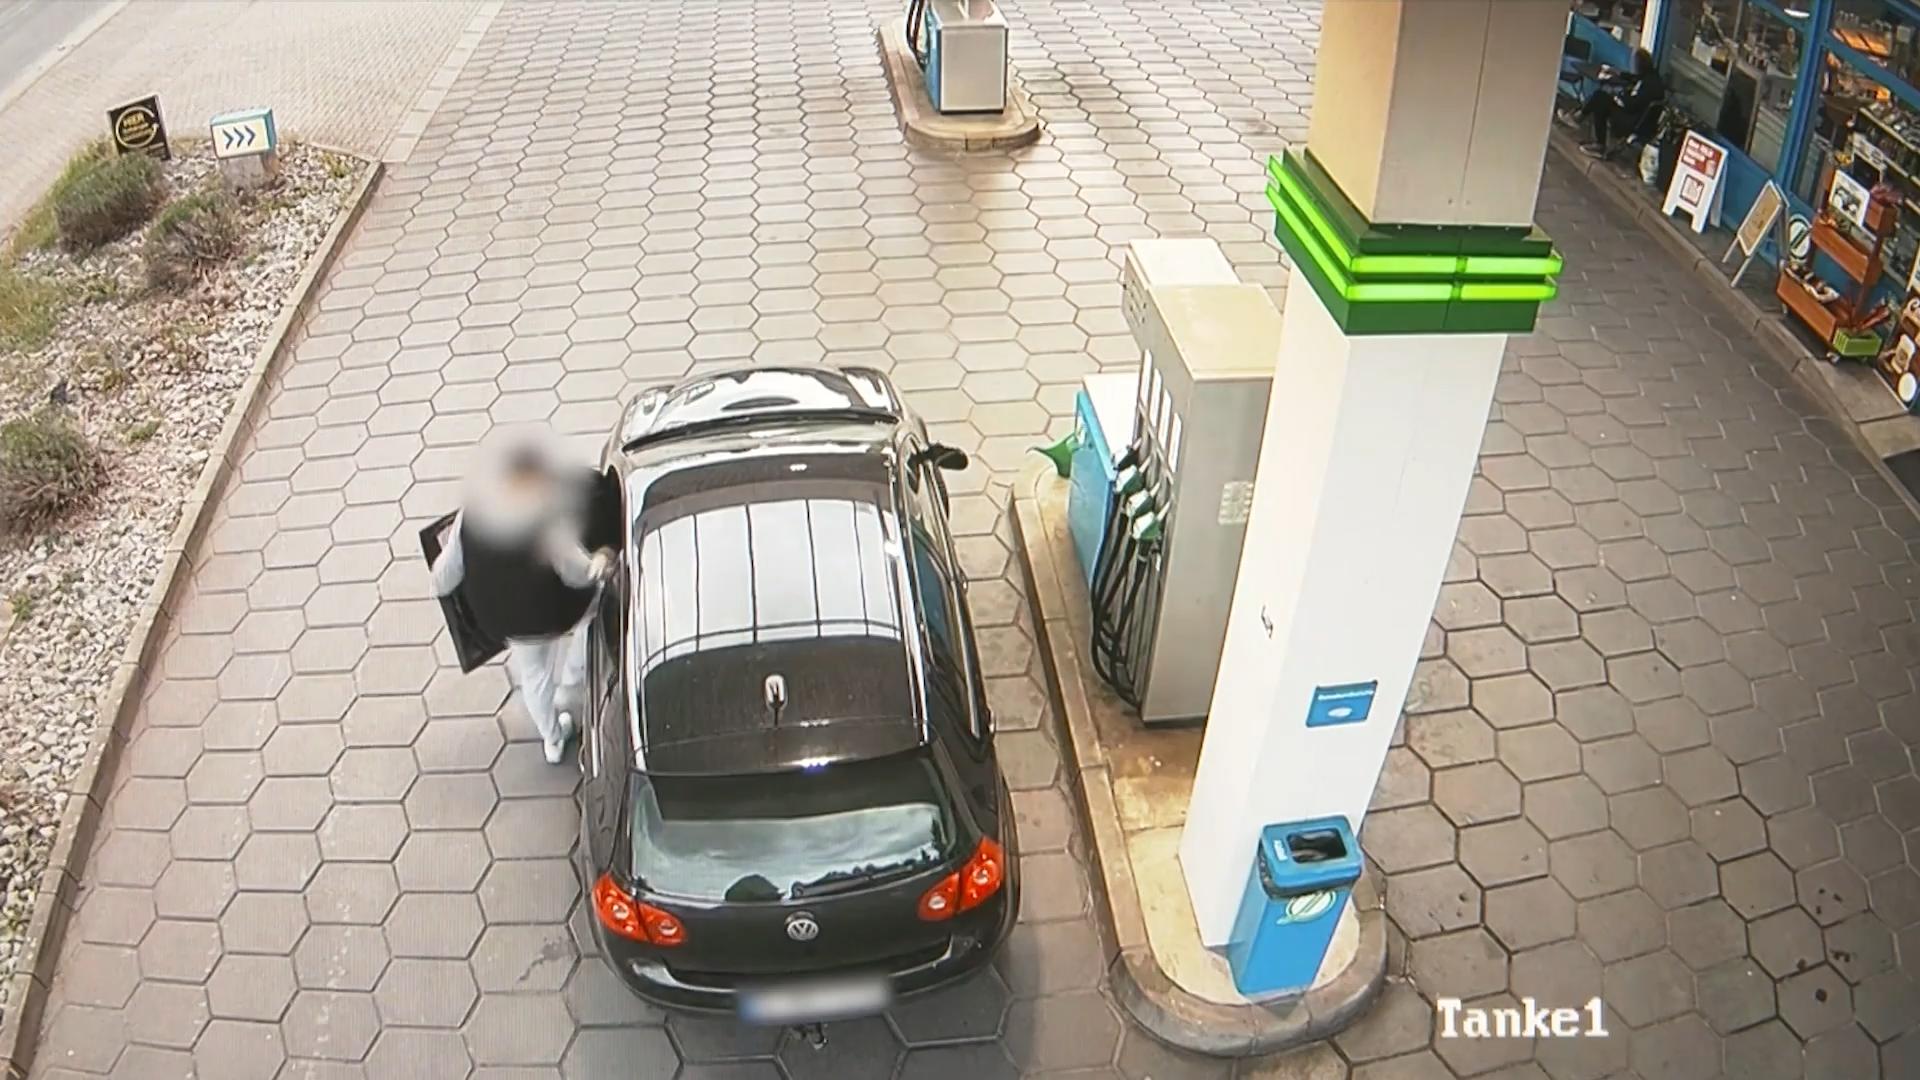 Immer mehr Menschen klauen Sprit Diebstahl Benzin an Tankstelle